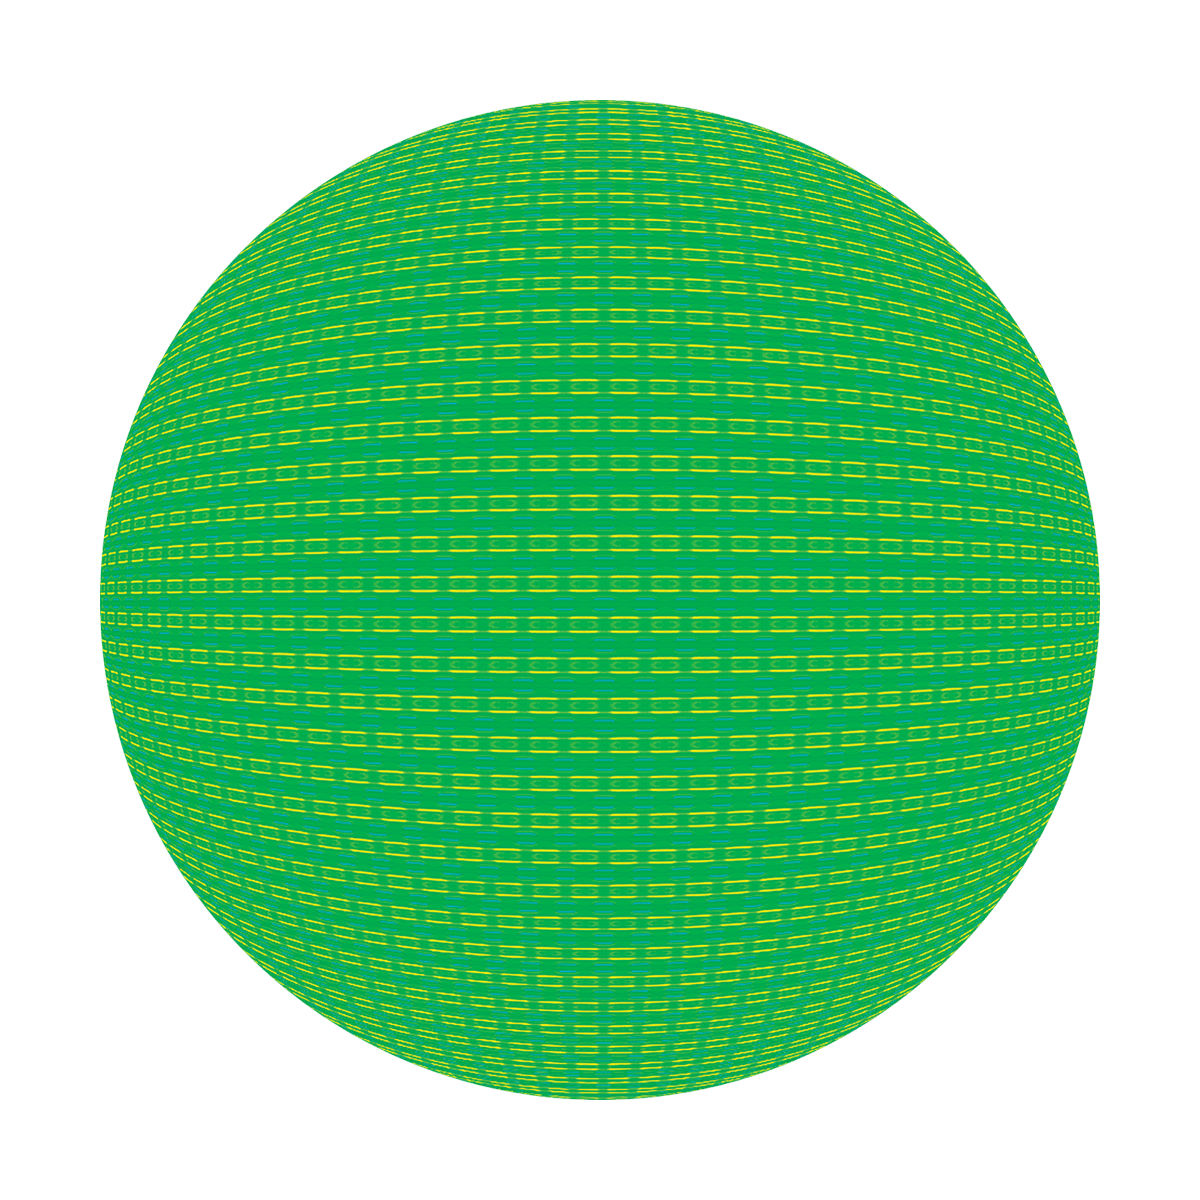 C2-0078 Green Cyberspace